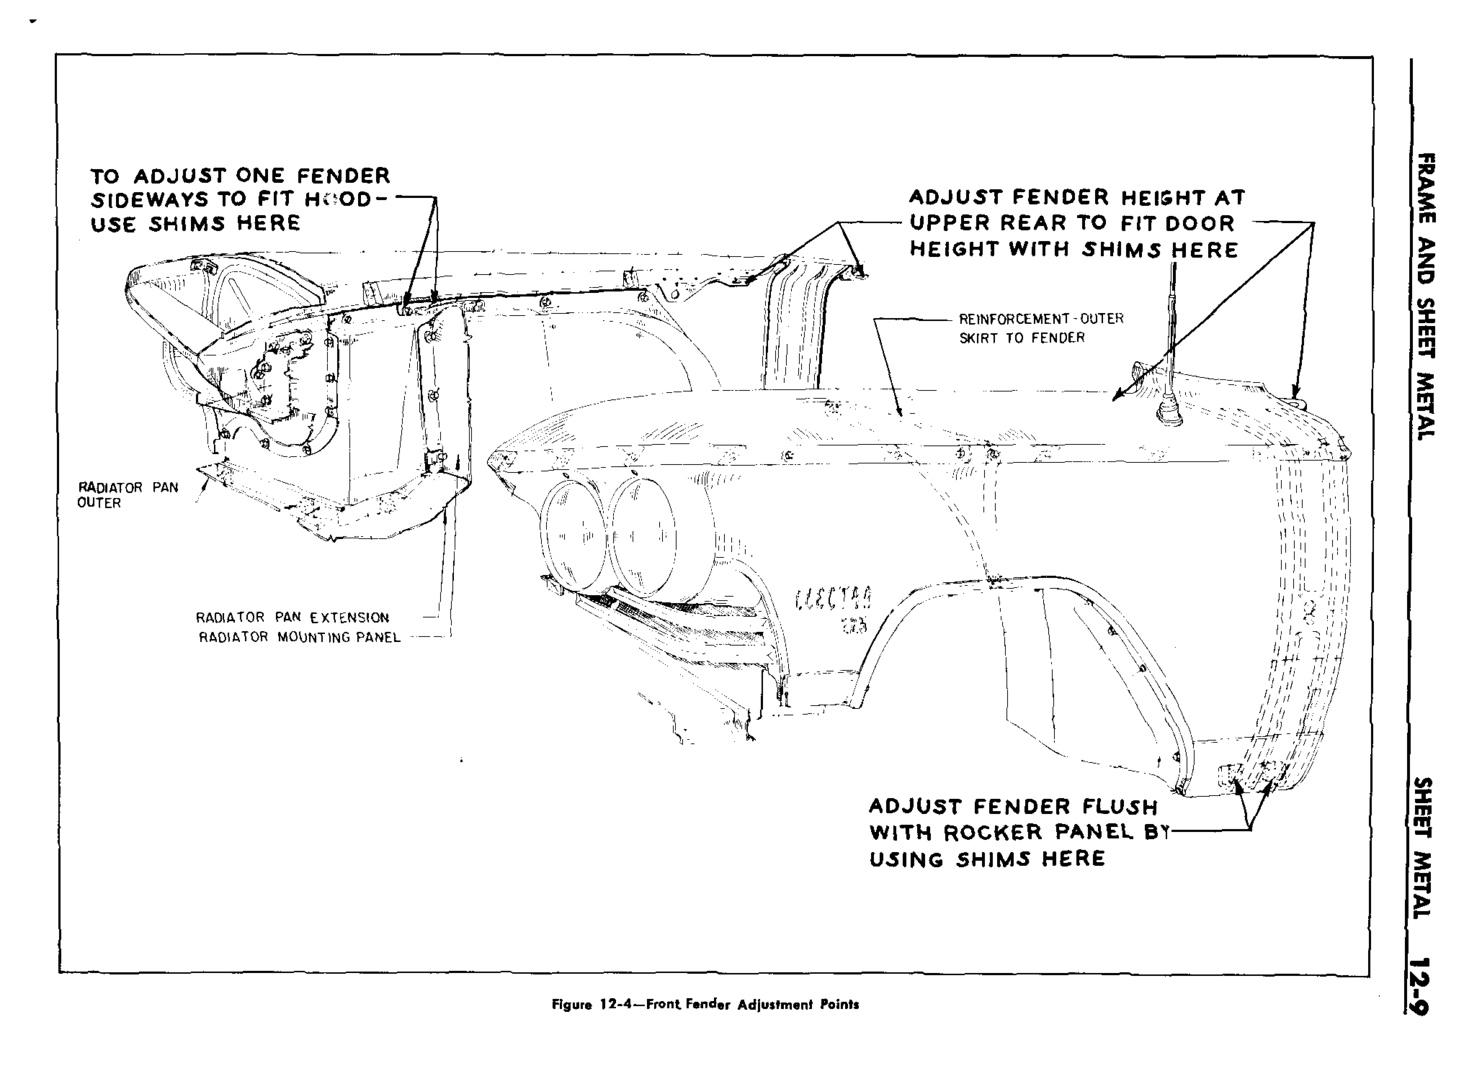 n_13 1959 Buick Shop Manual - Frame & Sheet Metal-009-009.jpg